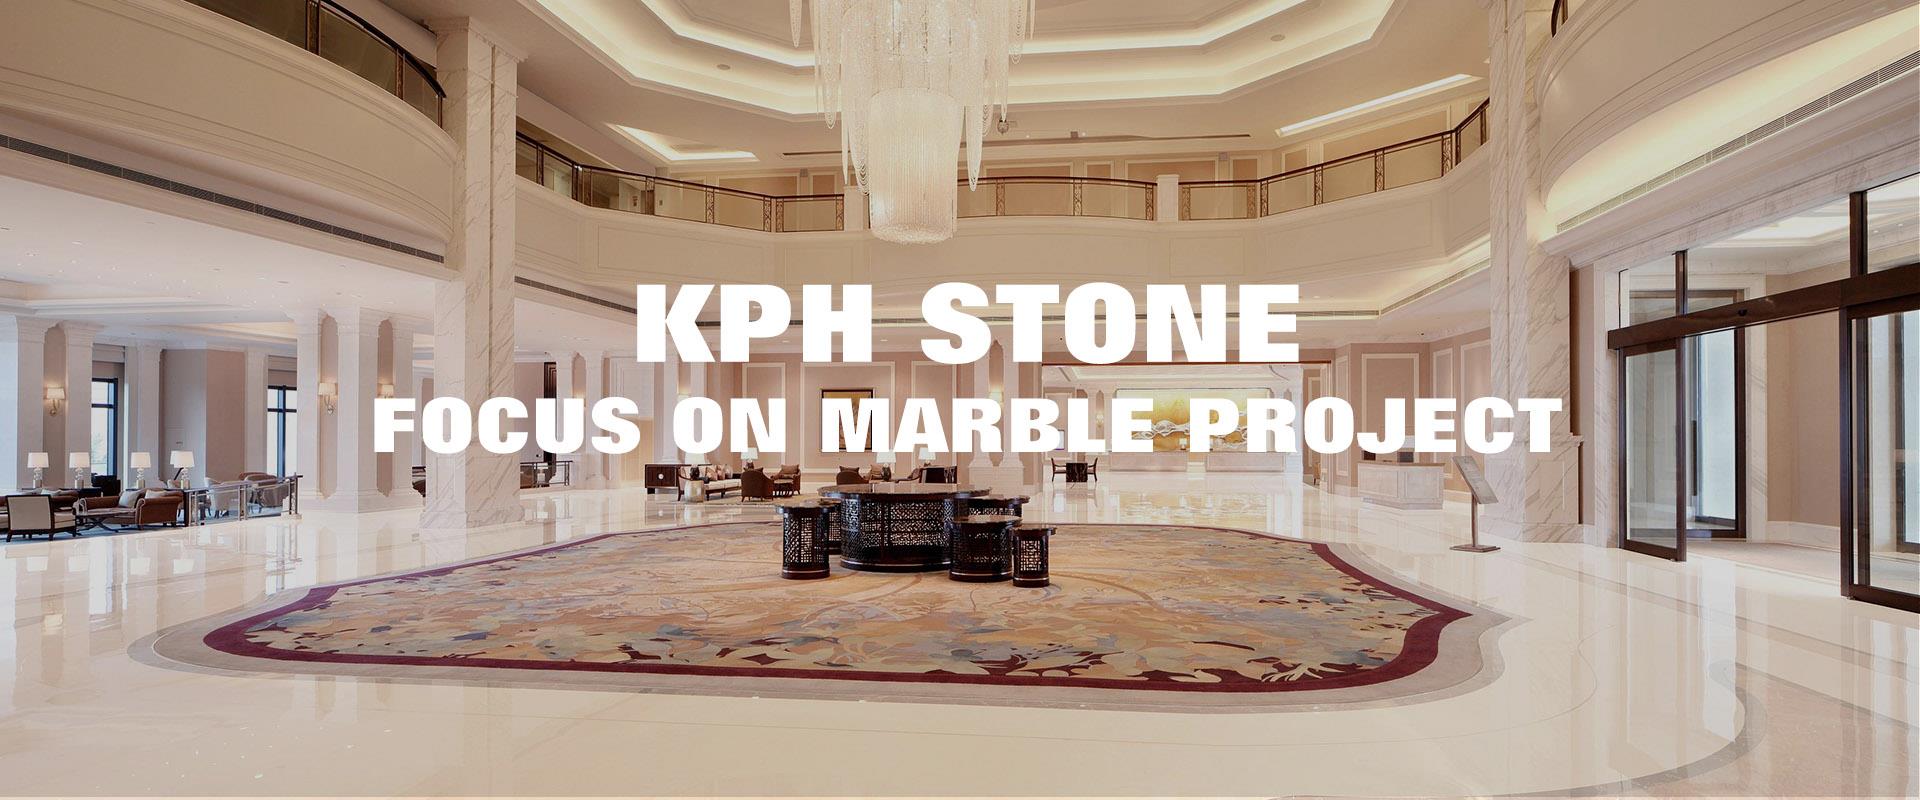 Hotel Lobby Marble Flooring Waterjet